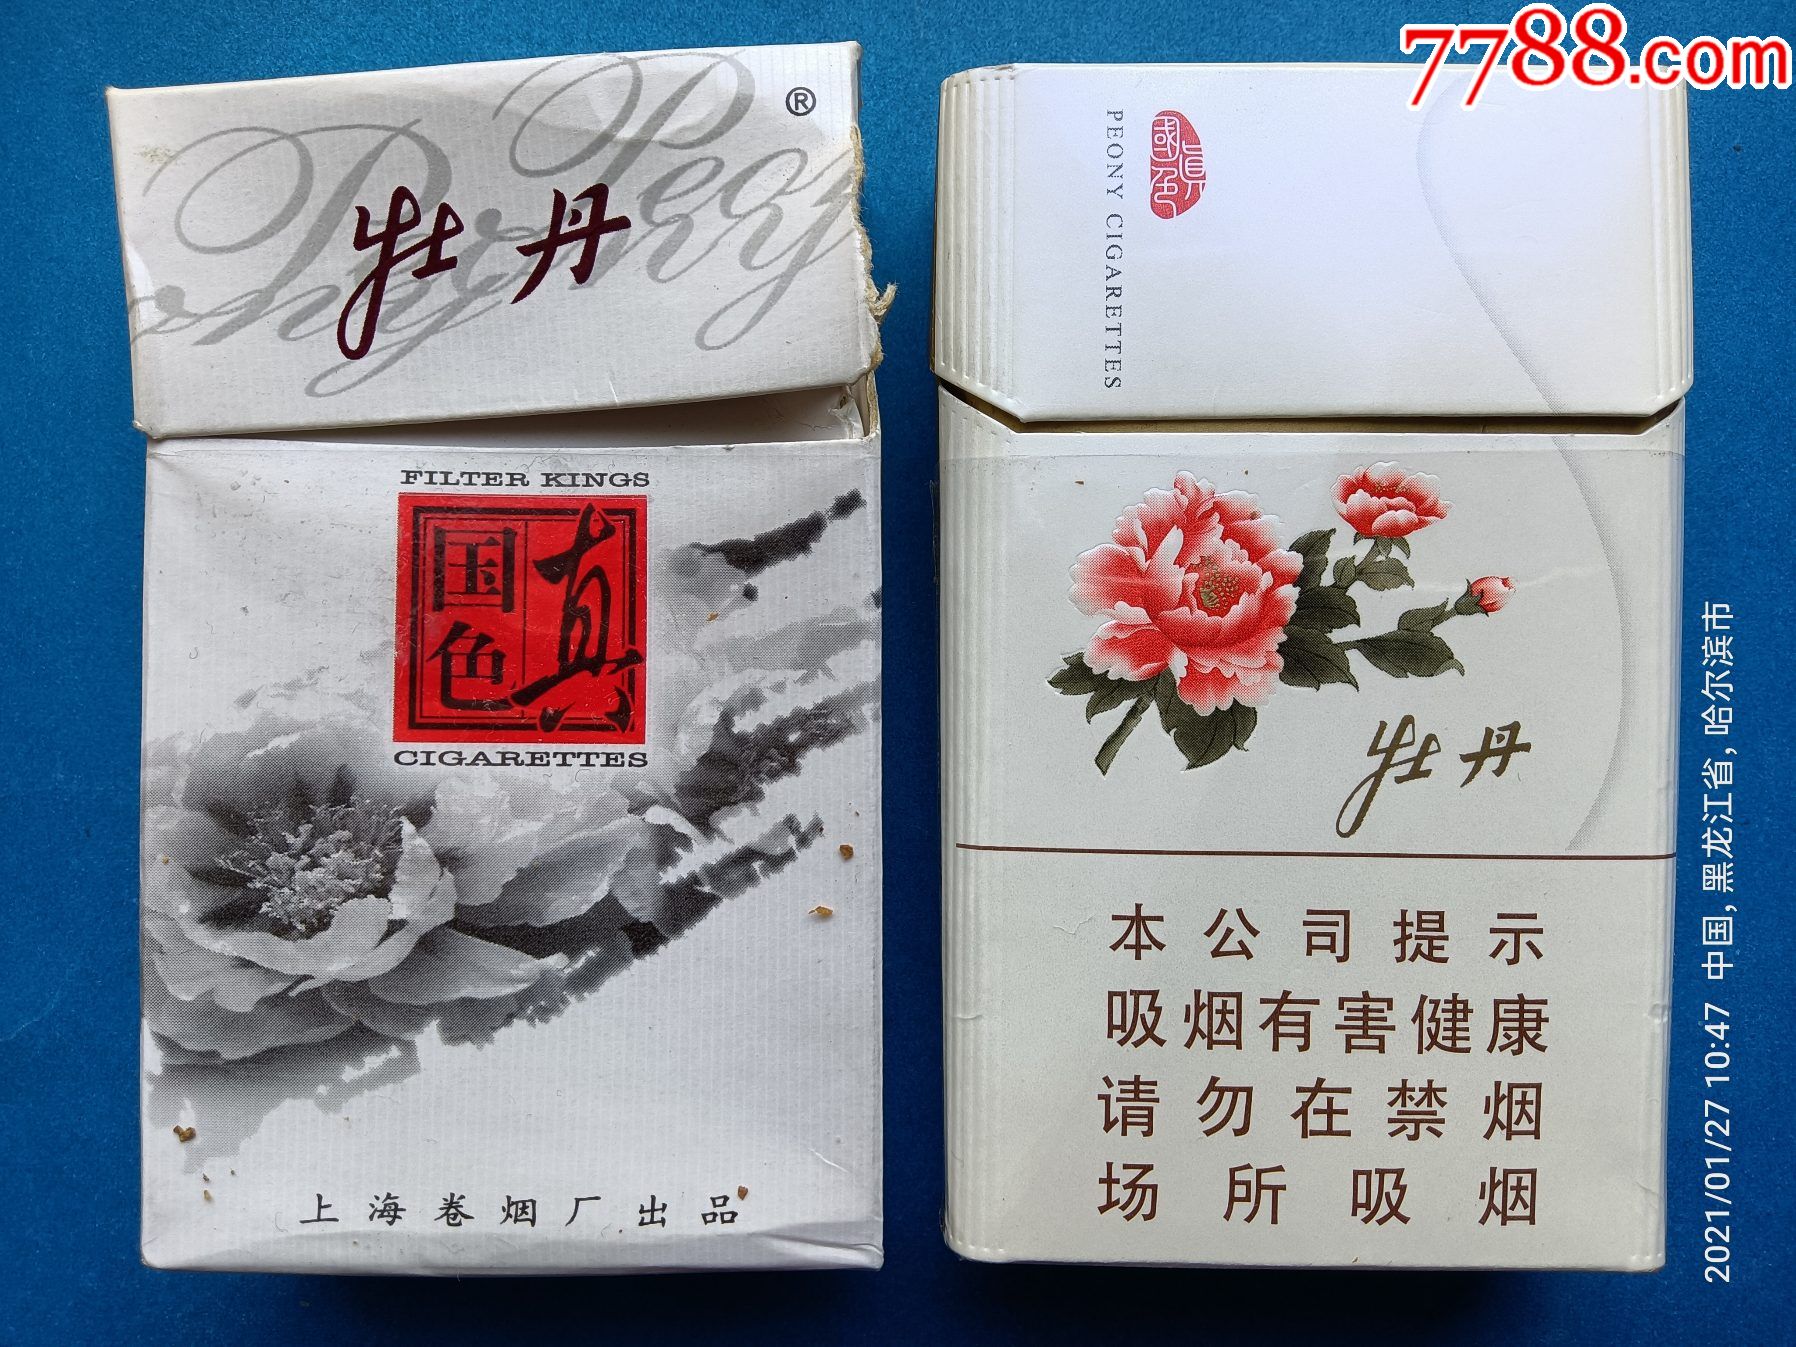 烟标:牡丹·真国色,两枚不同,上海卷烟厂,上海烟草集团有限责任公司